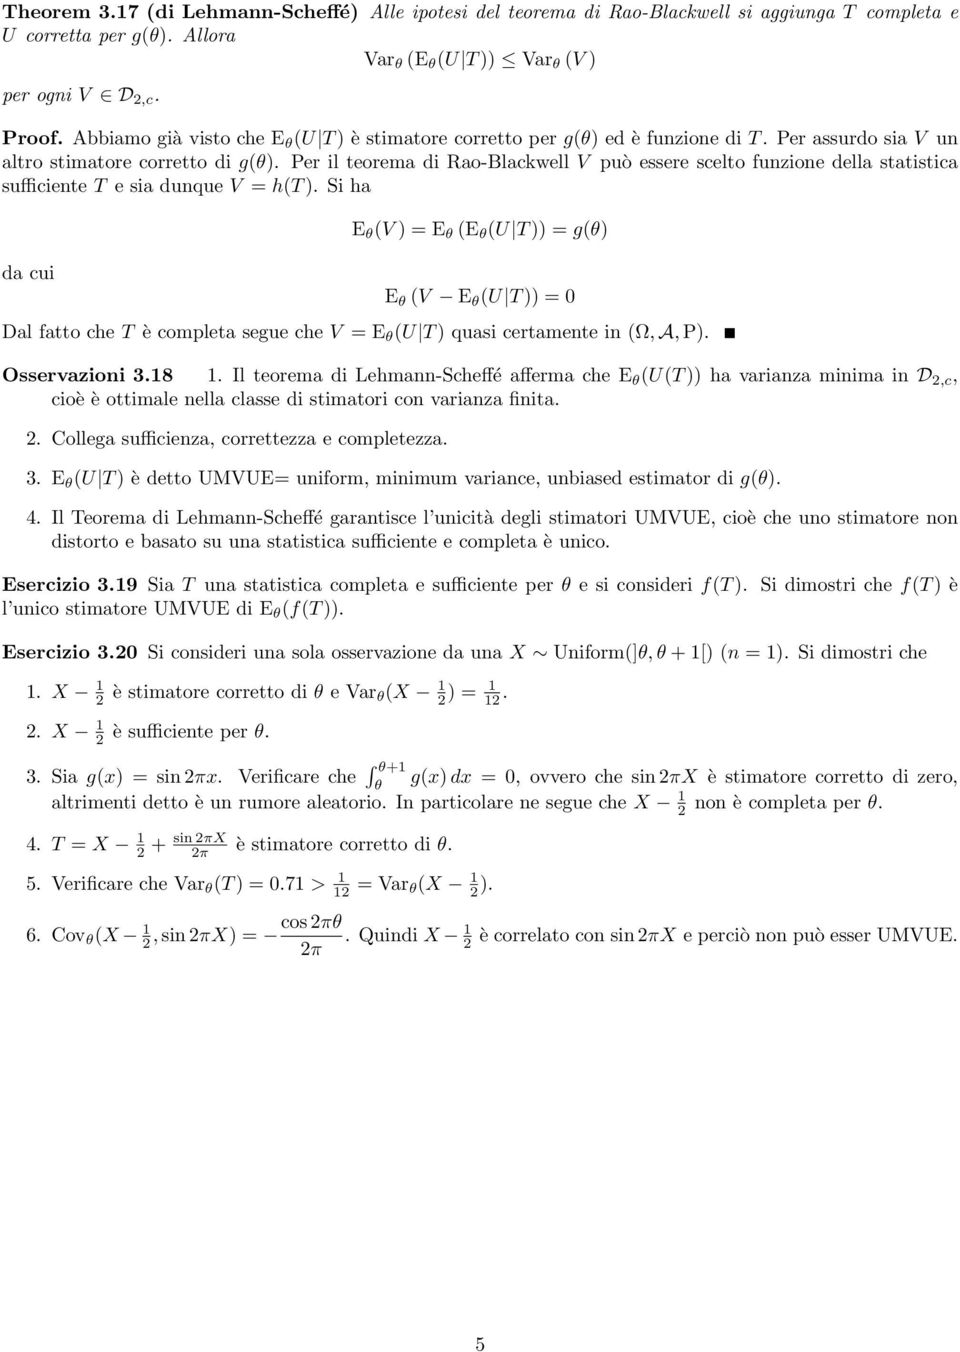 Per il teorema di Rao-Blackwell V può essere scelto fuzioe della statistica sufficiete T e sia duque V = ht.